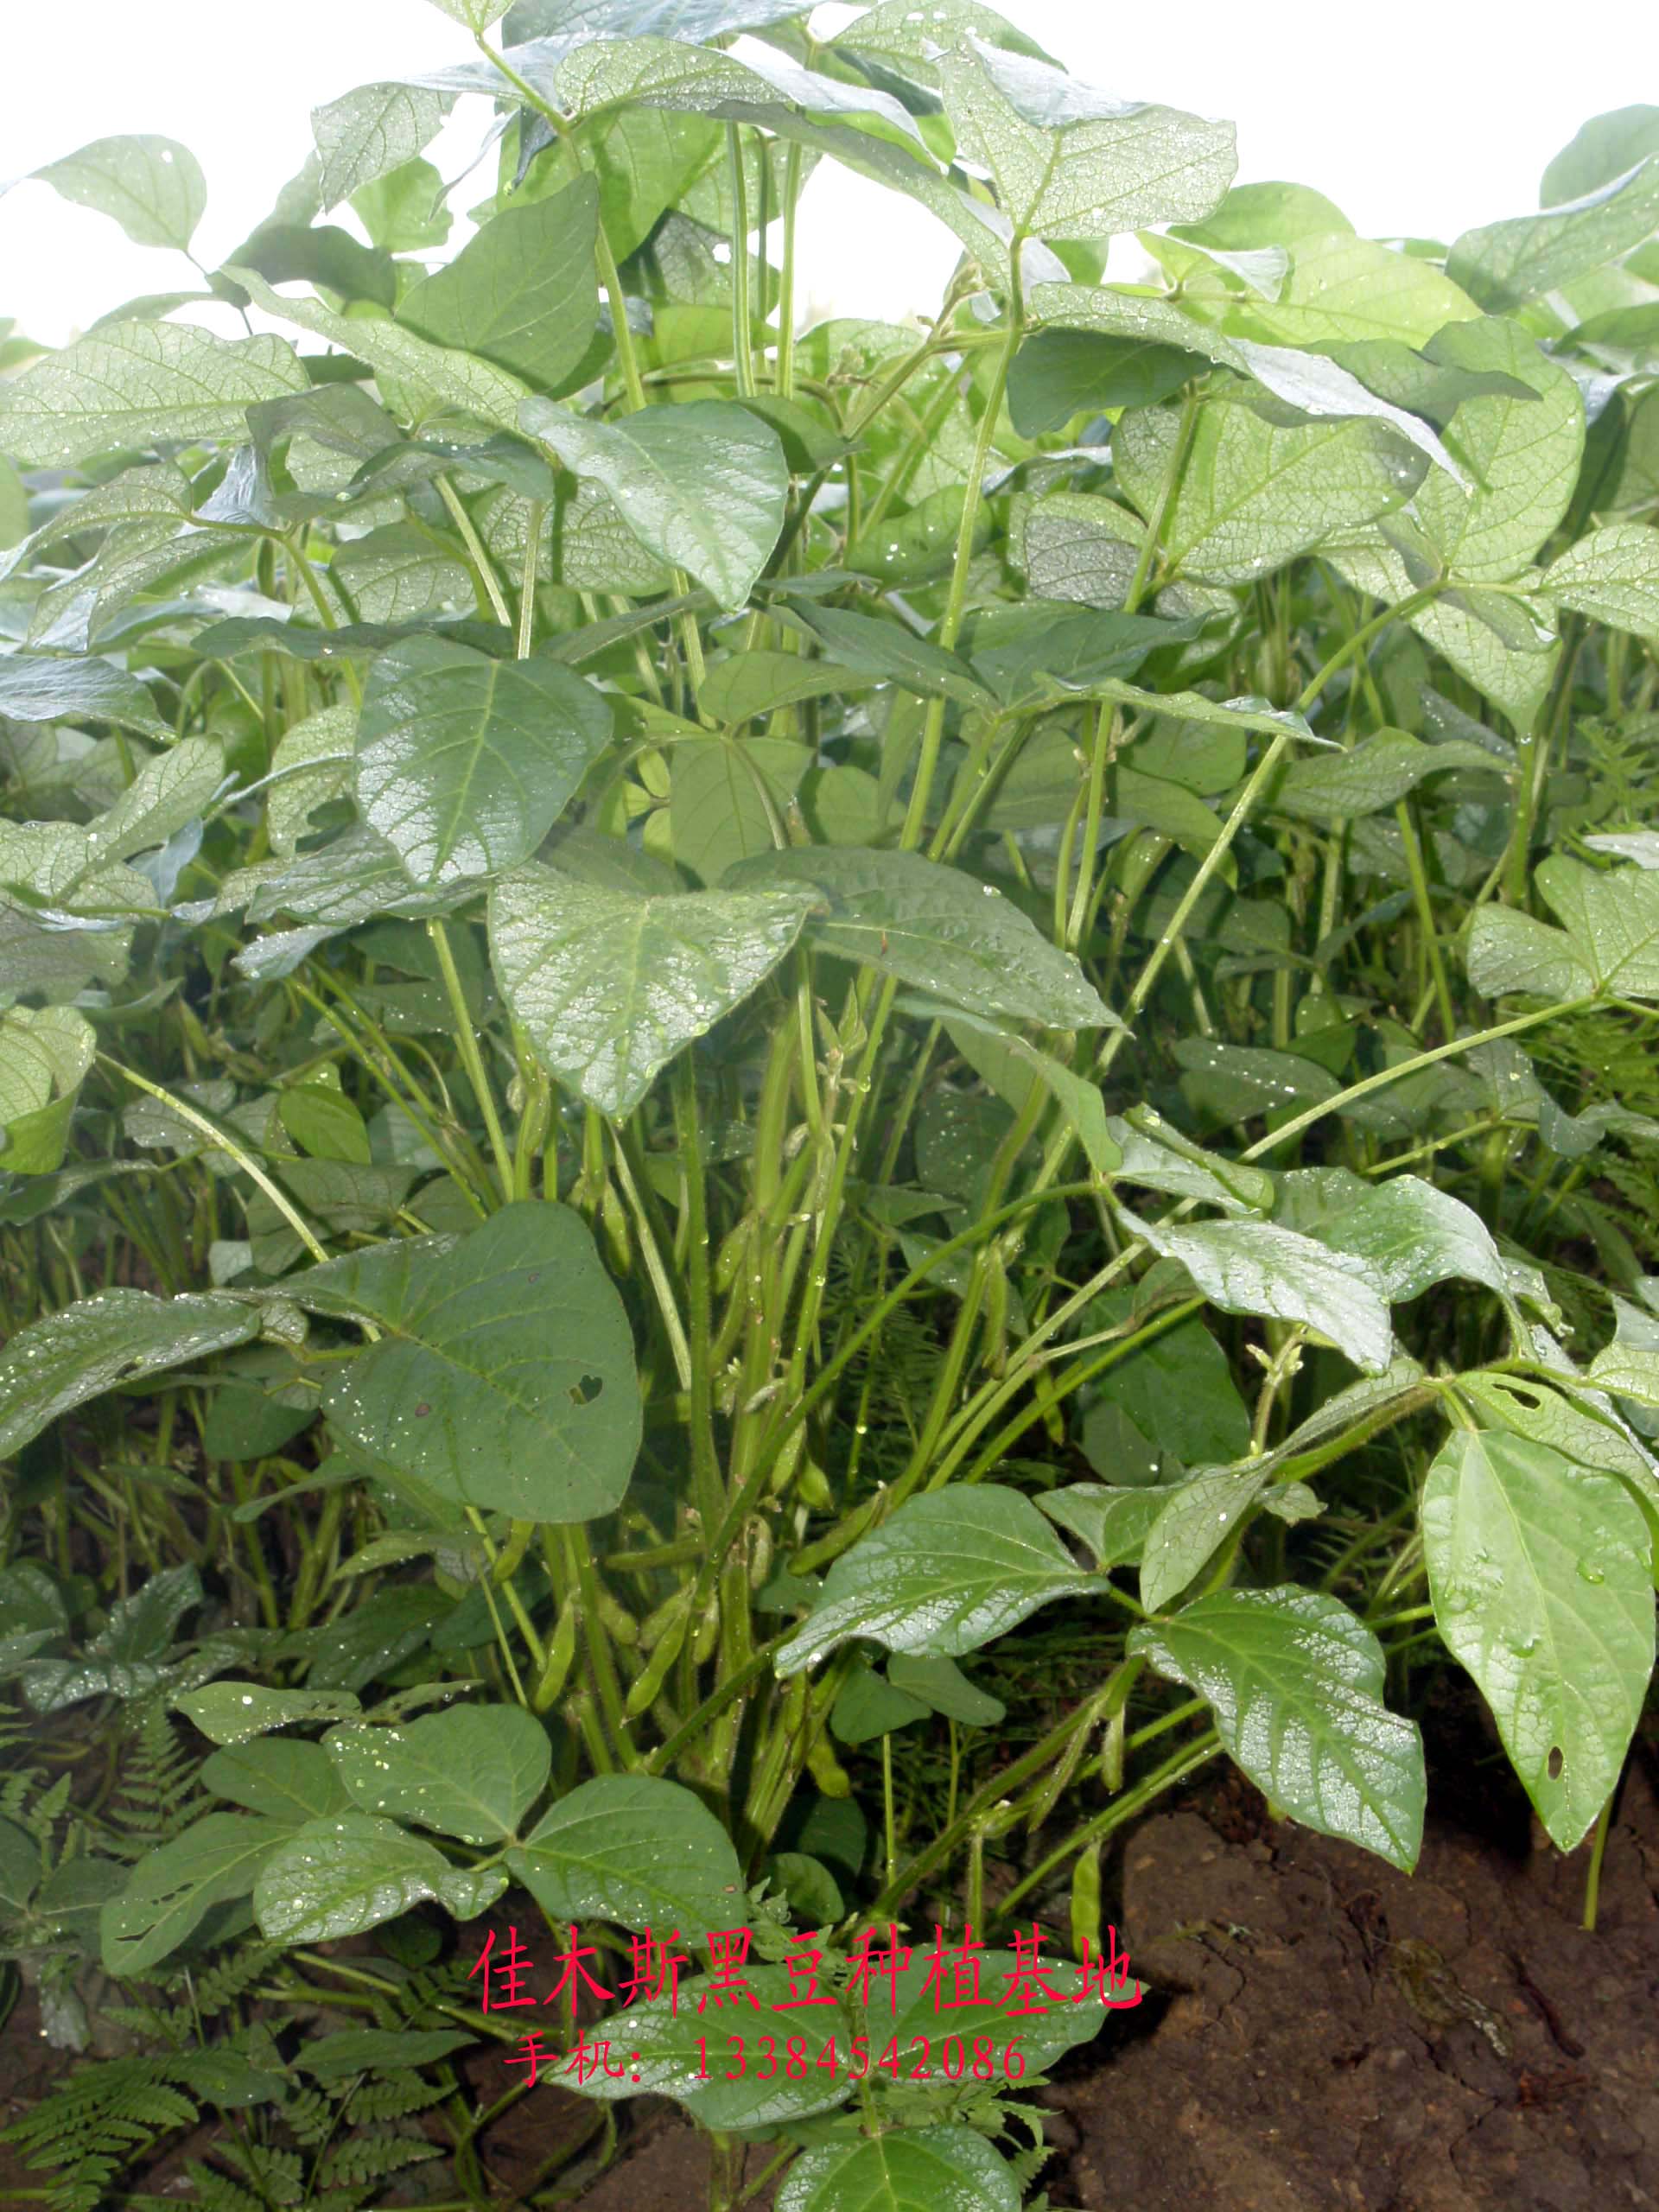 佳木斯黑豆种植基地,东北黑豆网联合拍摄的黑豆图片